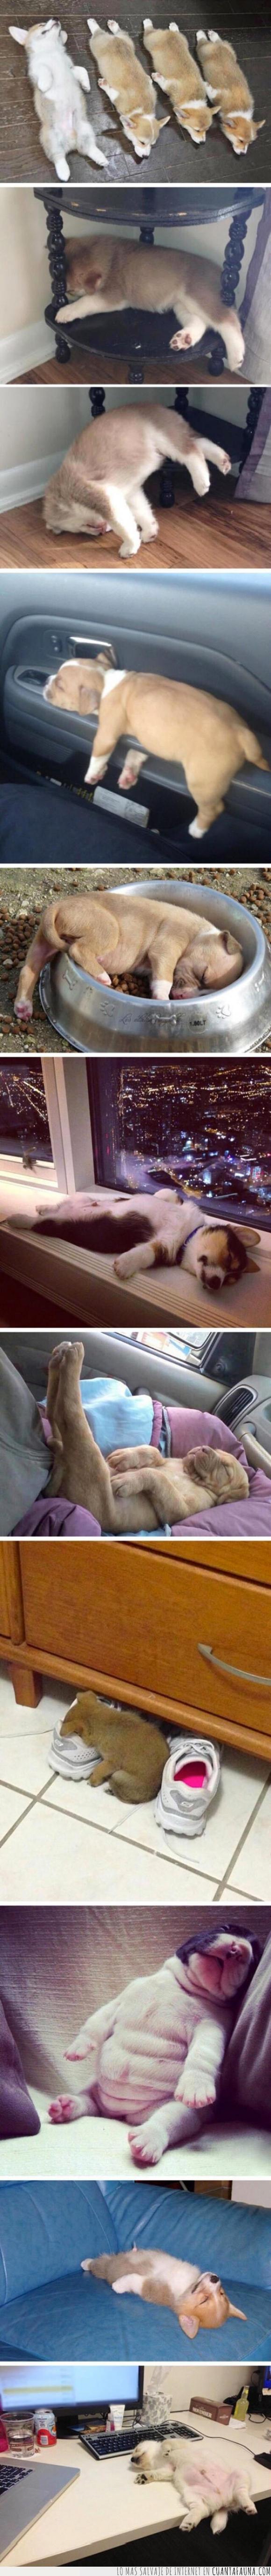 cachorros,dormir,perros,siestas